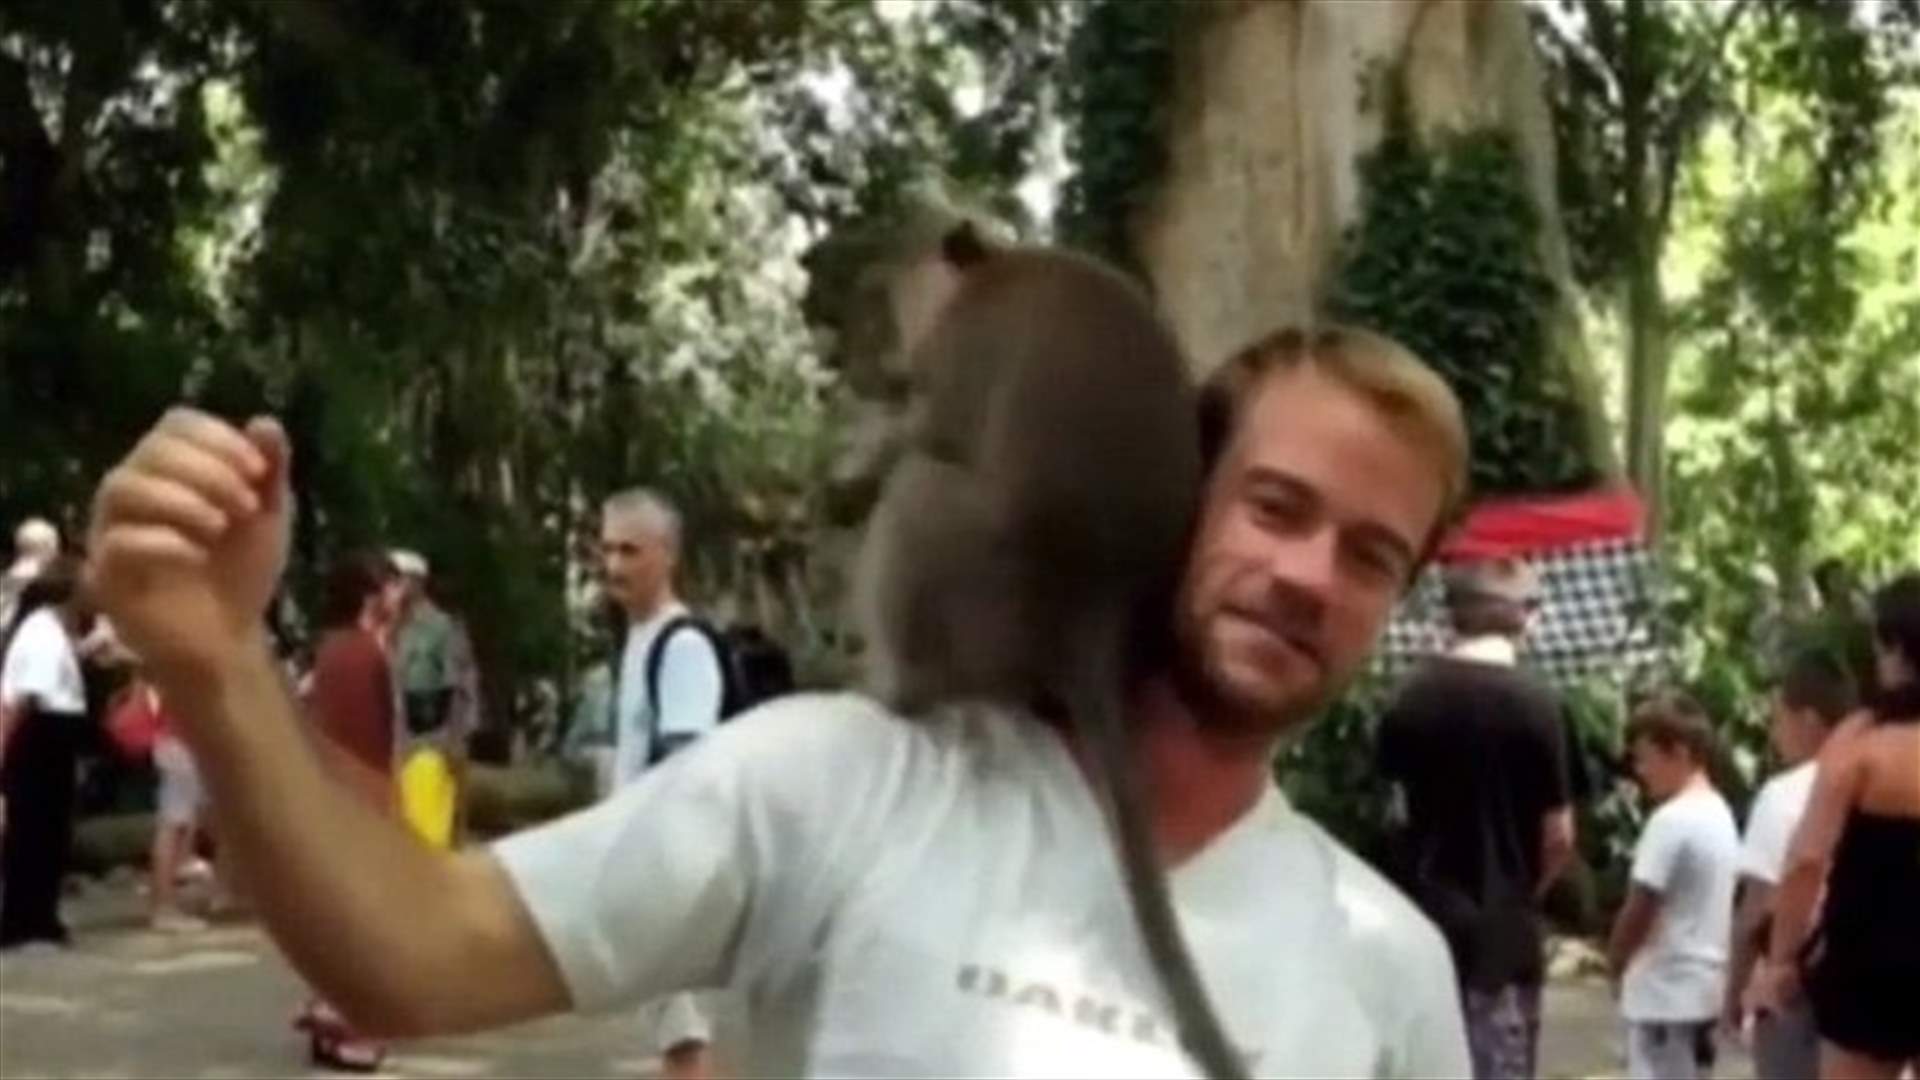 فيديو مضحك: قردان قفزا على رأس أحد السياح... فماذا فعلا؟